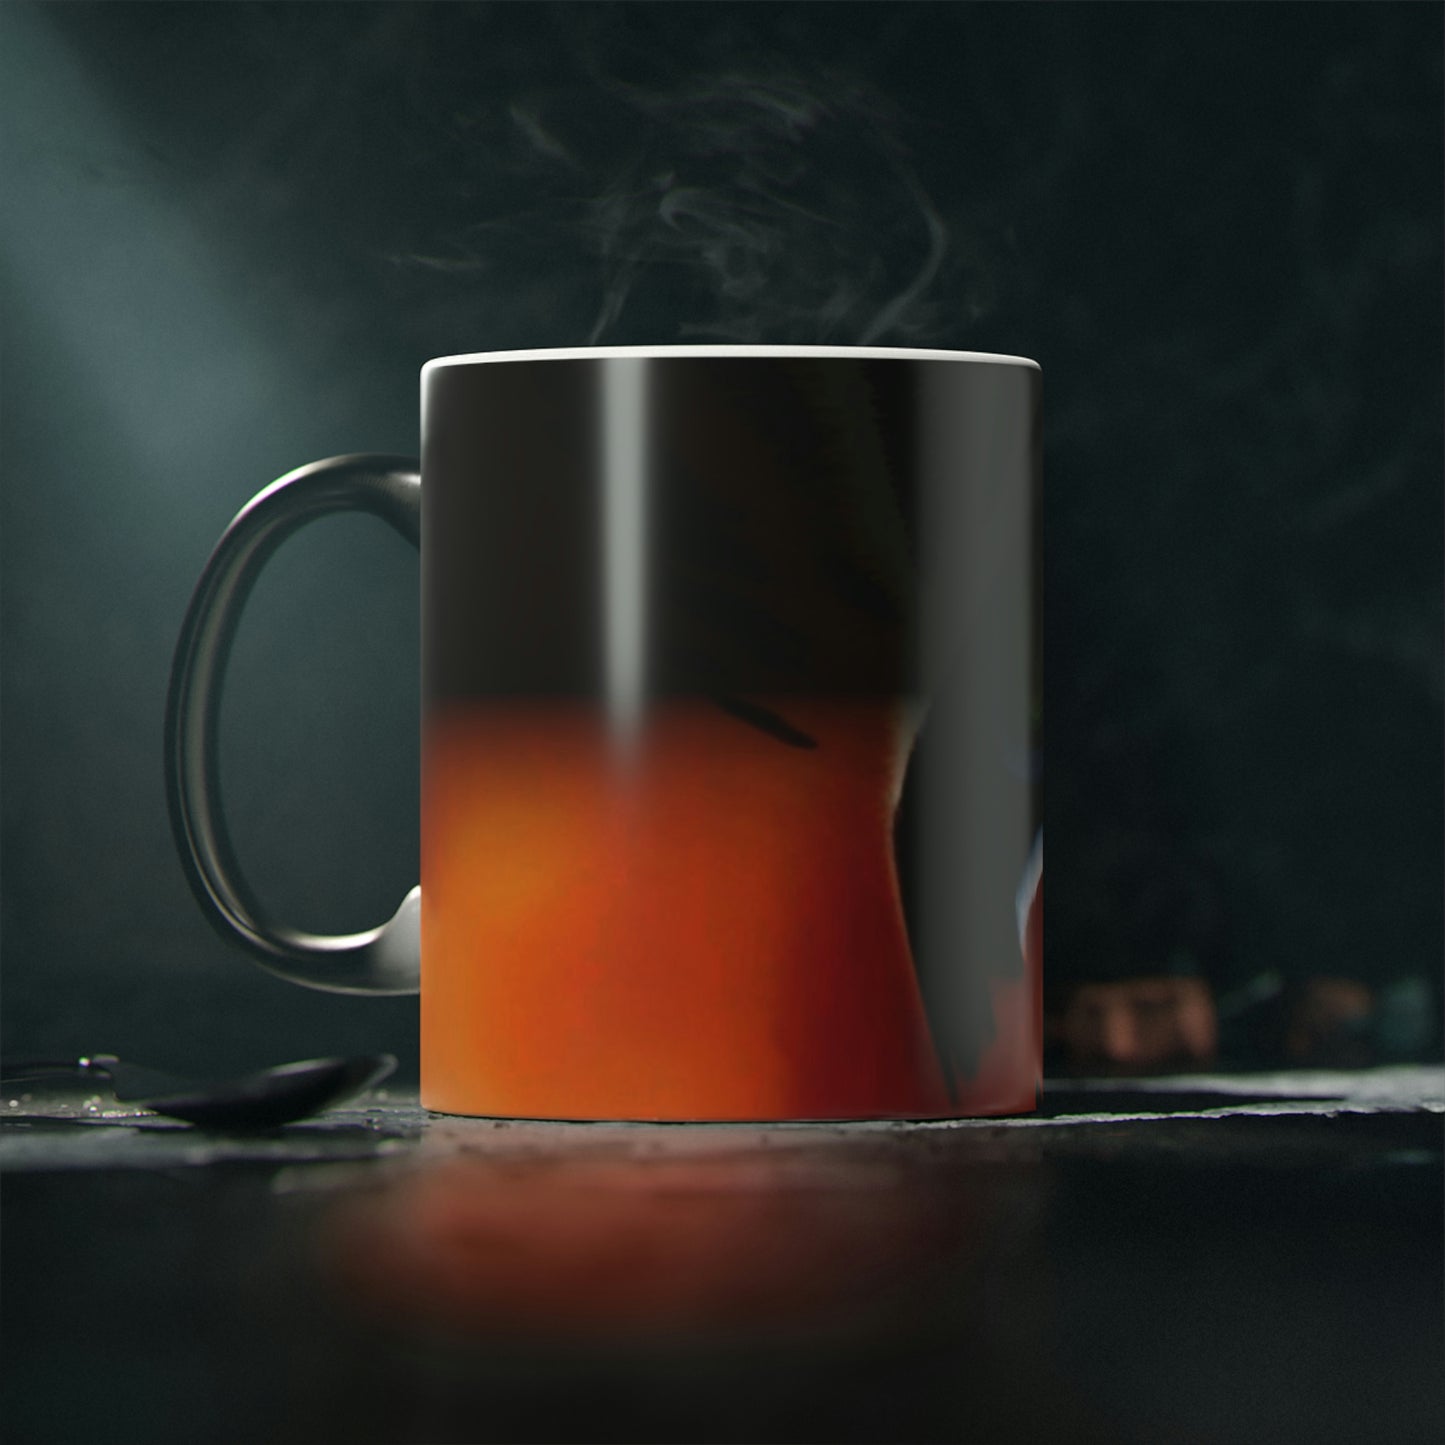 TIGER - Magic Mug